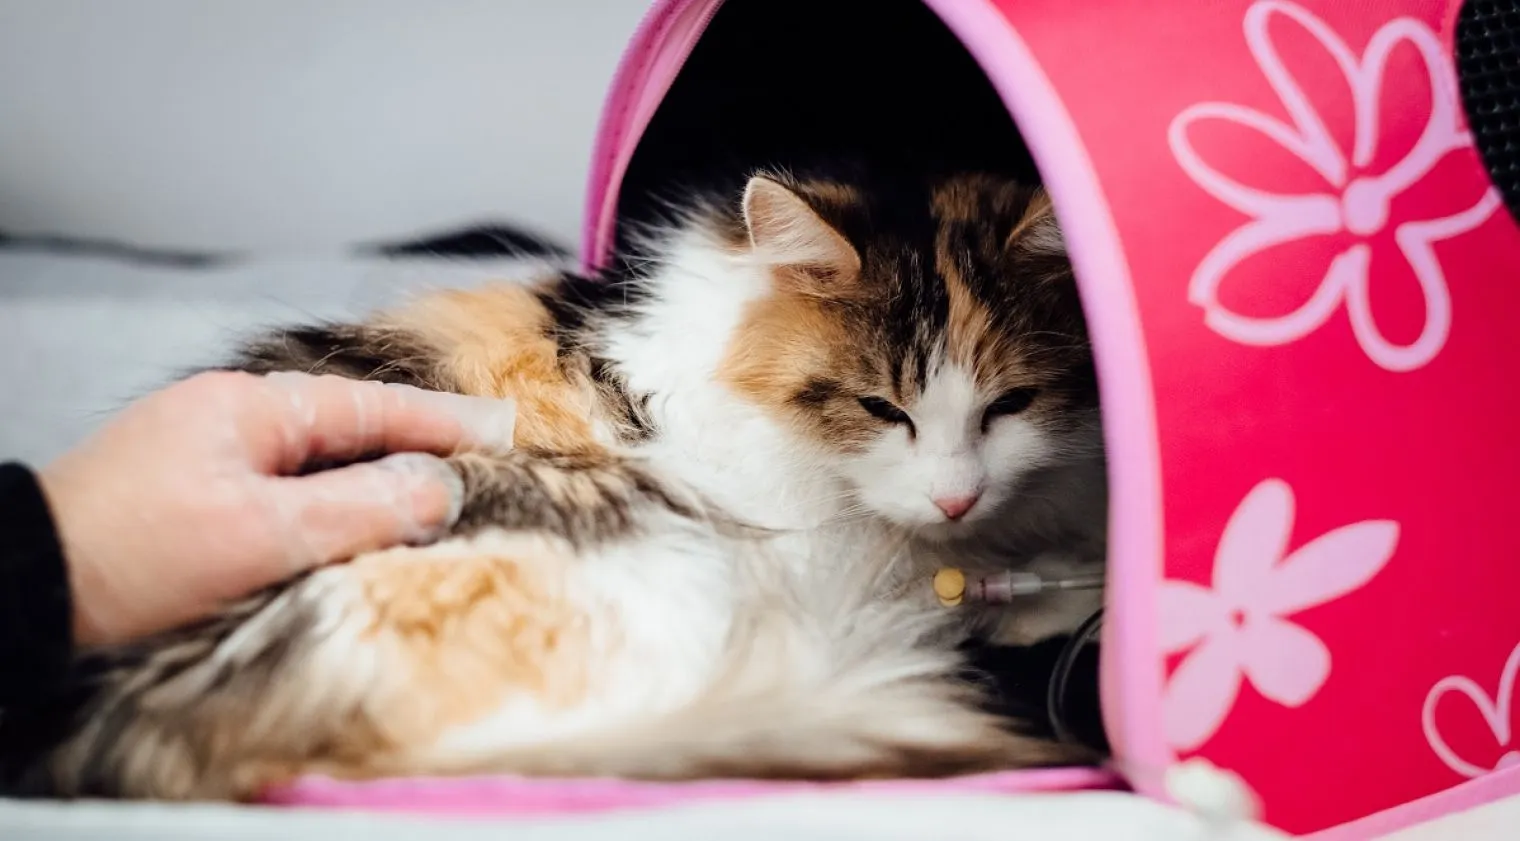 Pet Therapy, Pelihara Hewan untuk Bantu Meningkatkan Kesehatan Mental dan Fisik